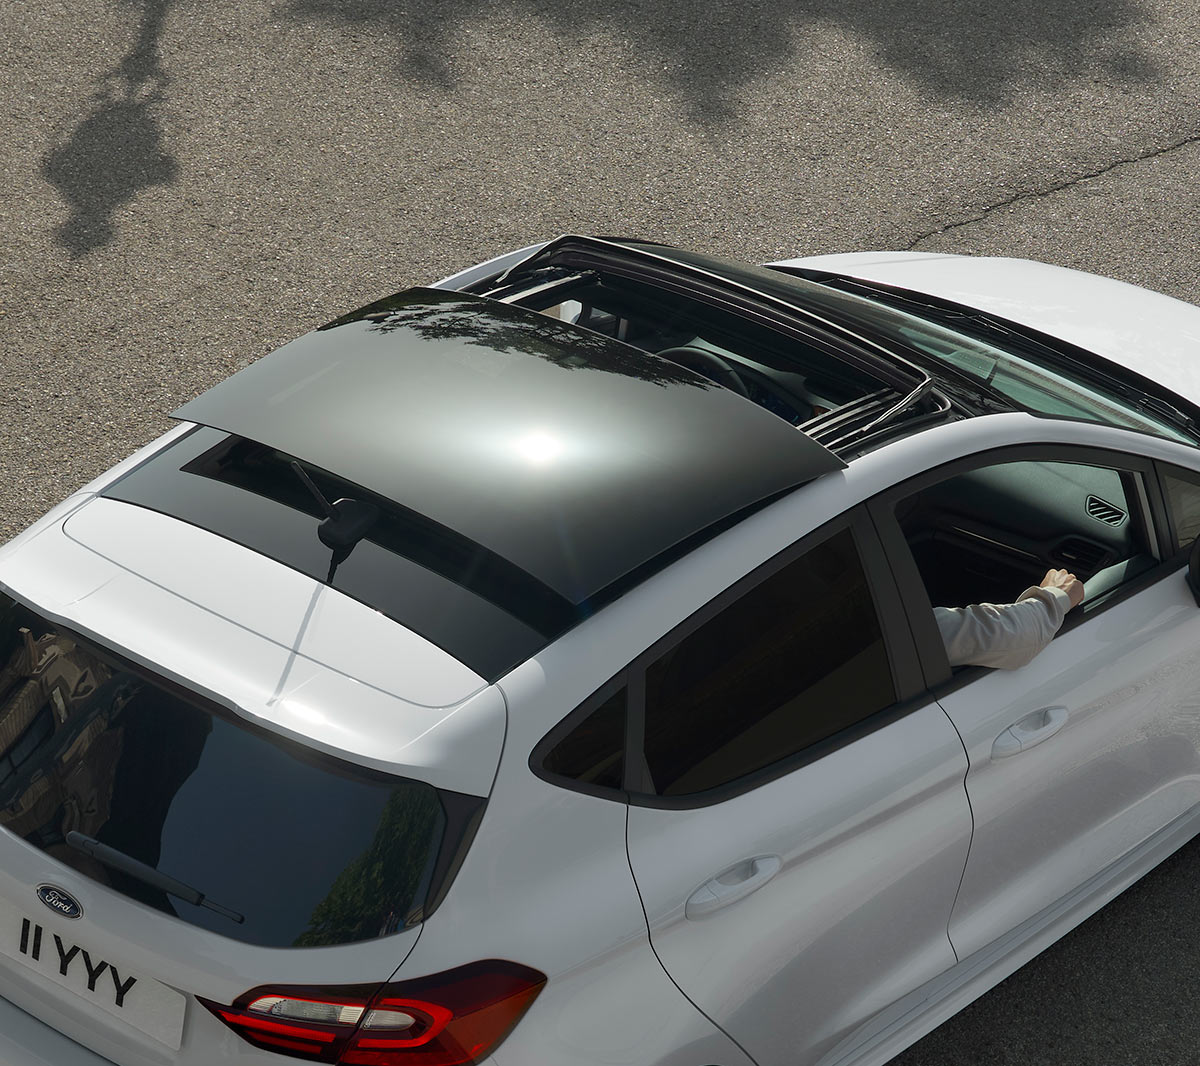 Ford Fiesta bianca. Vista posteriore a tre quarti dall’alto del modello con tetto panoramico apribile, in transito su una strada.